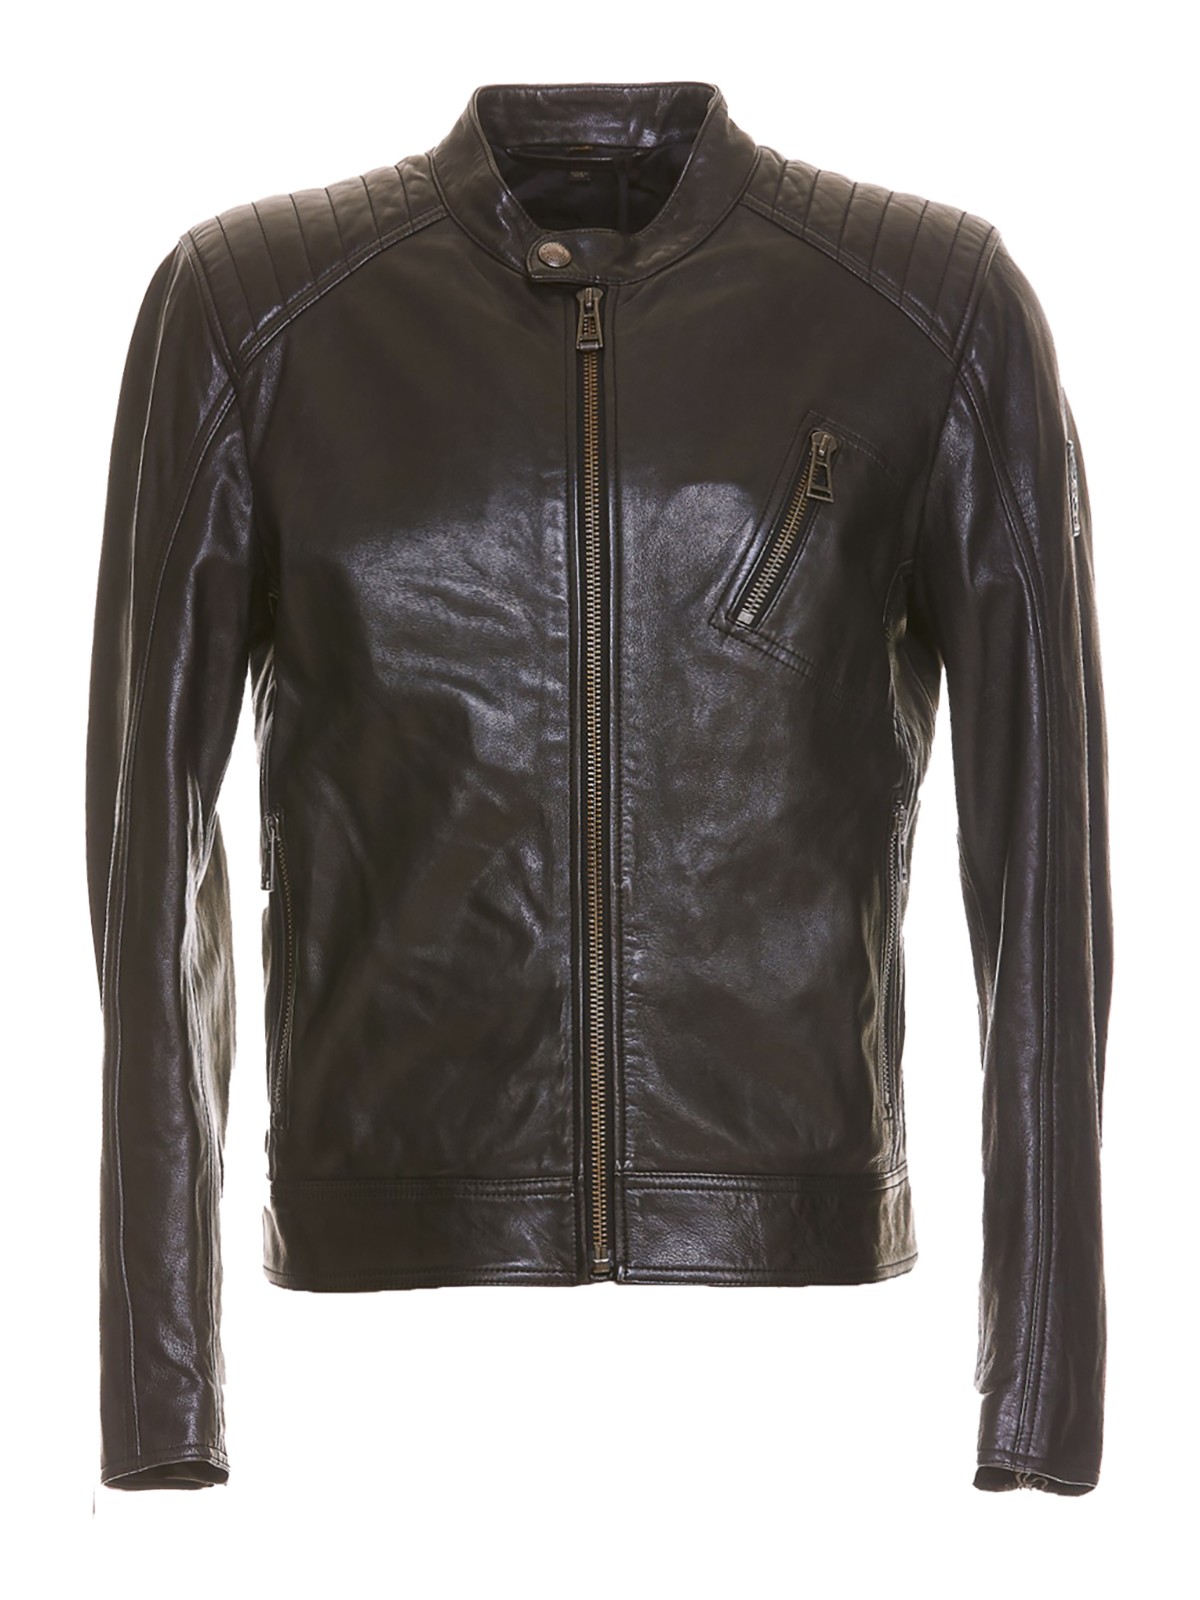 Belstaff Leather Jacket In Black